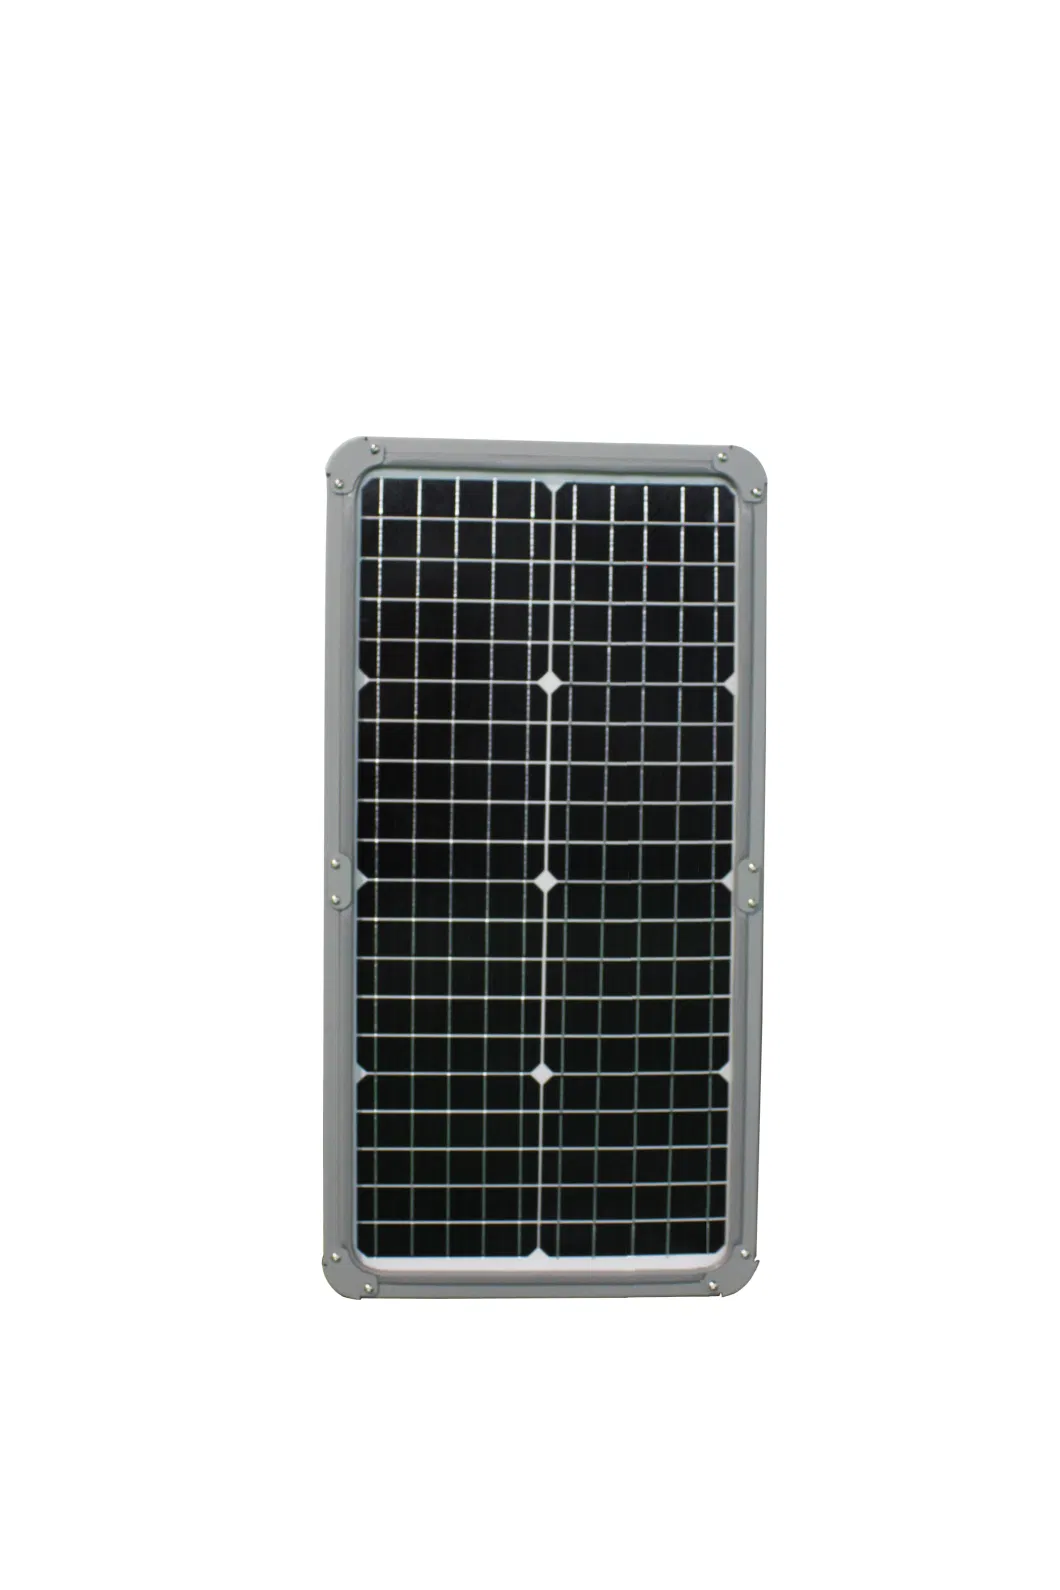 Factory Wholesale Waterproof 30W 40W 50W 60W 80W 100W 150W Luminaries Solar